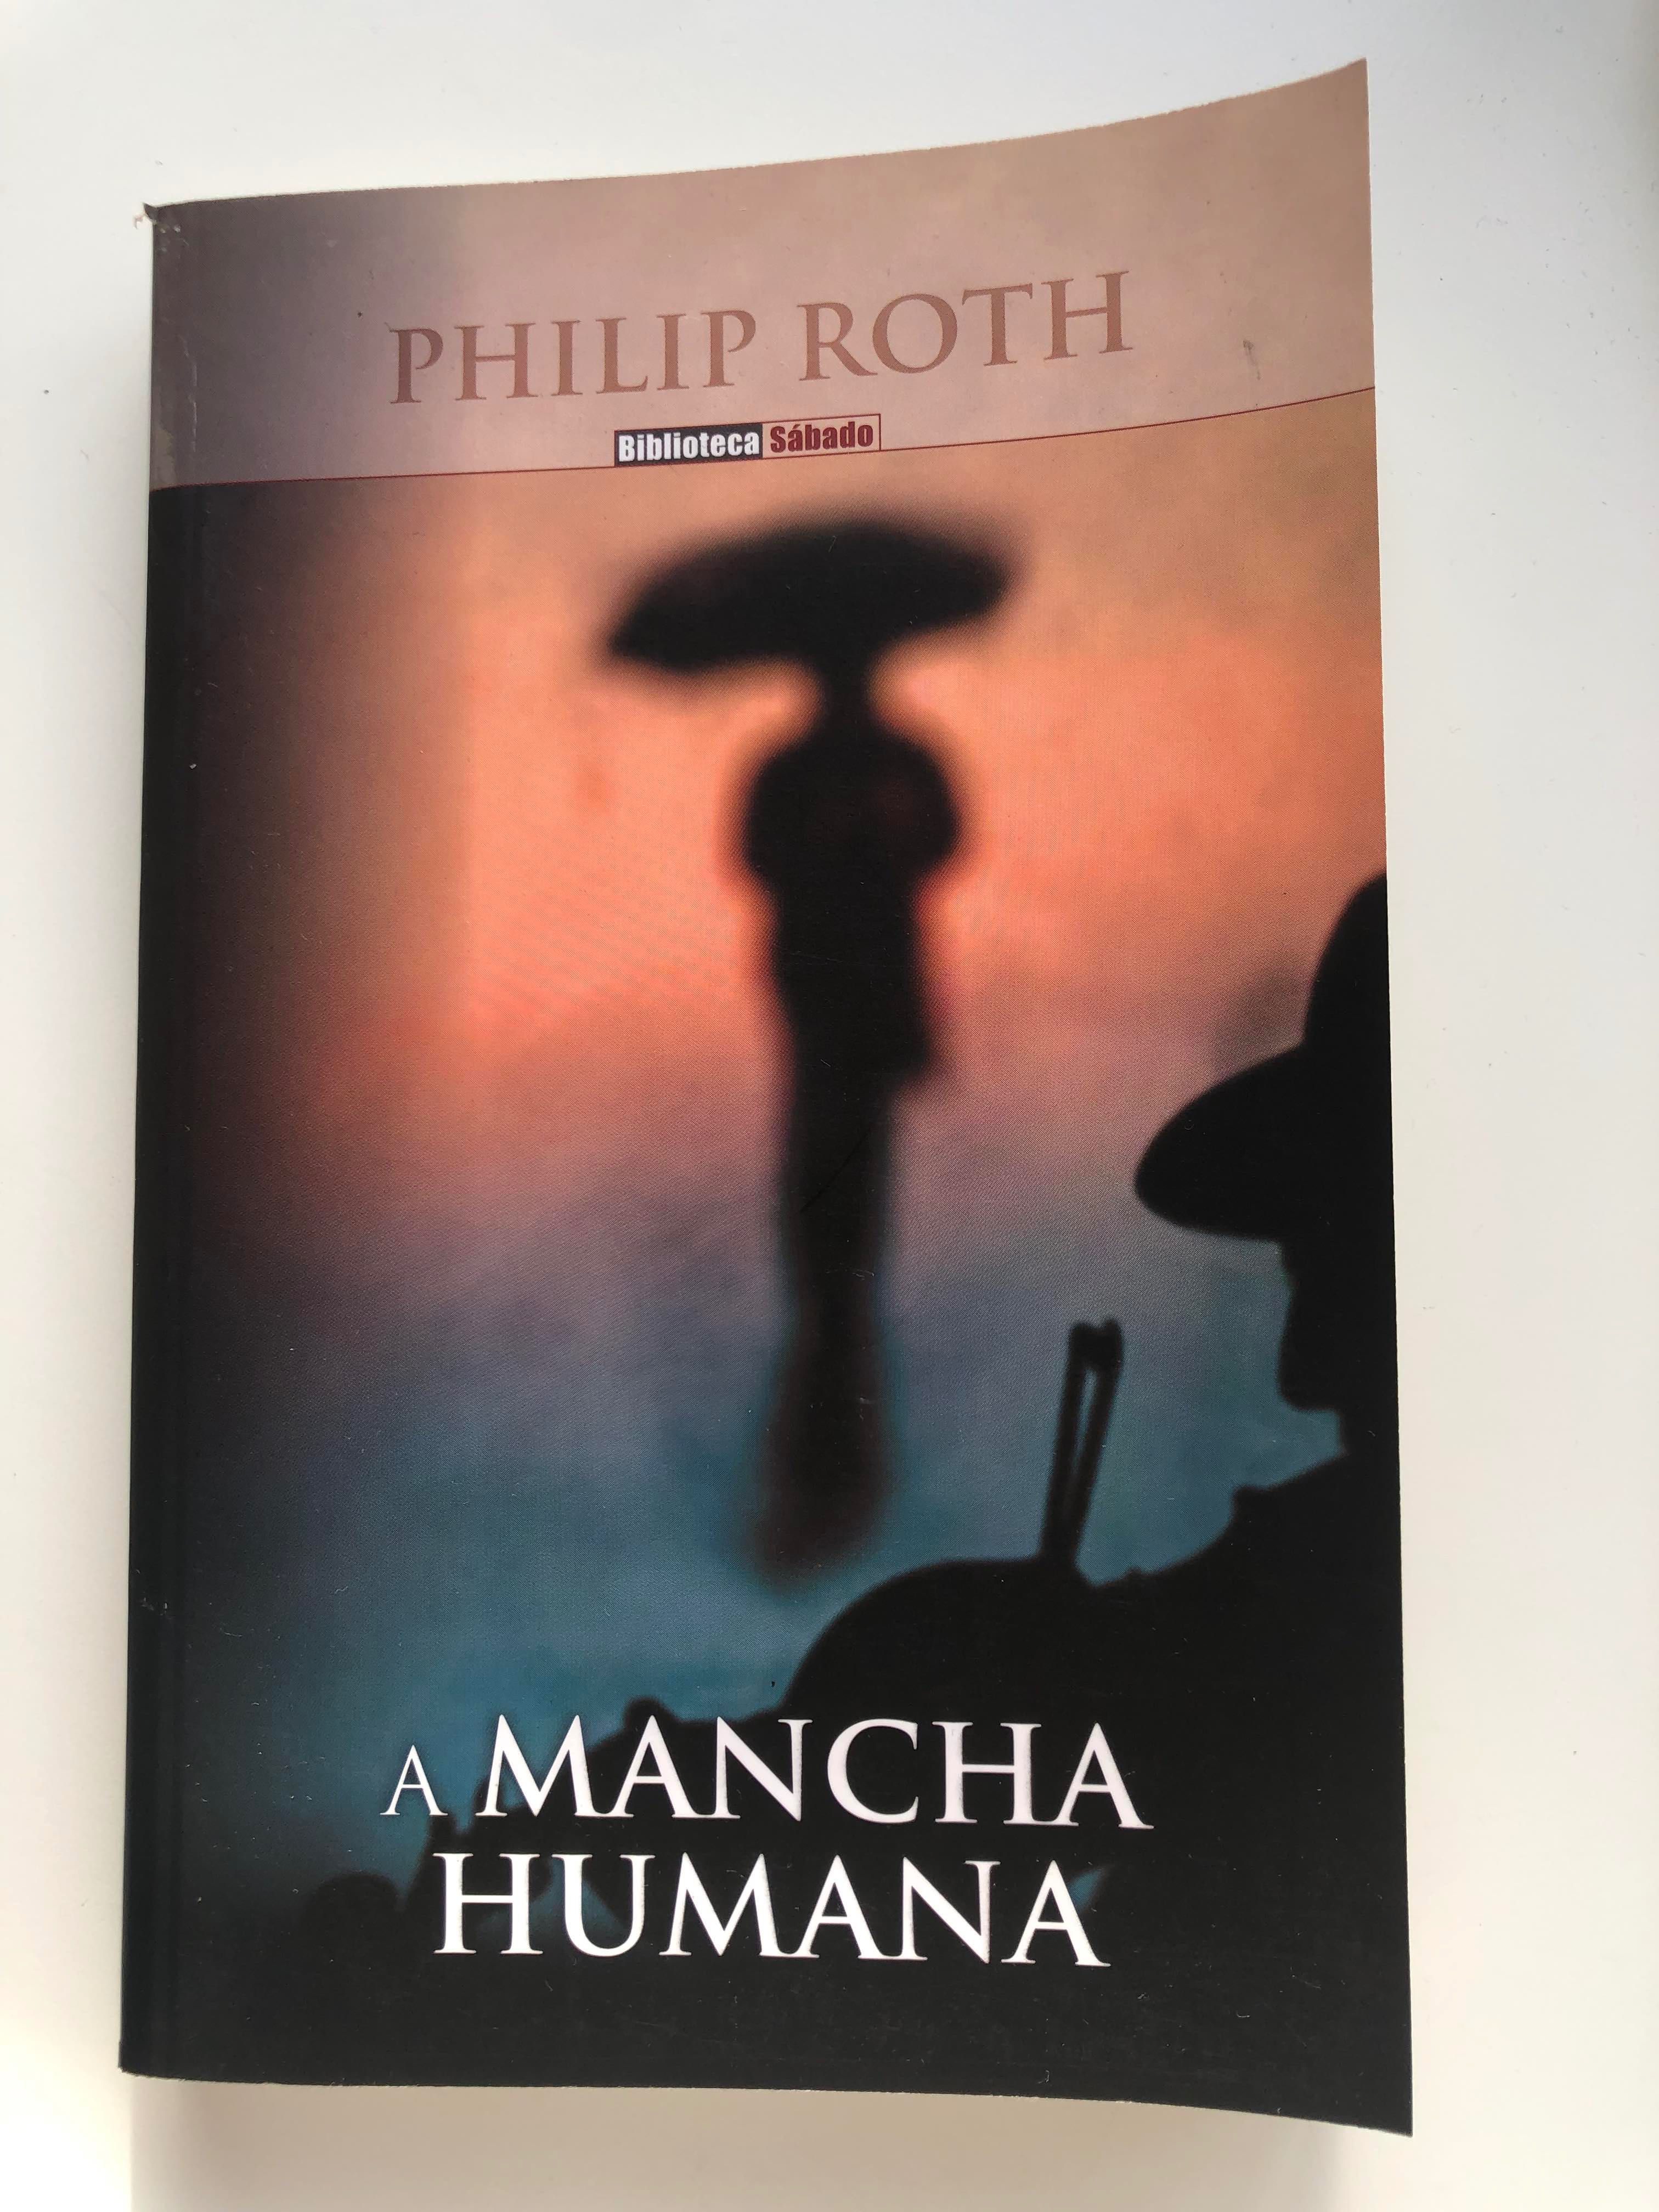 Livro "A Mancha Humana" de Philip Roth (Portes Incluídos)